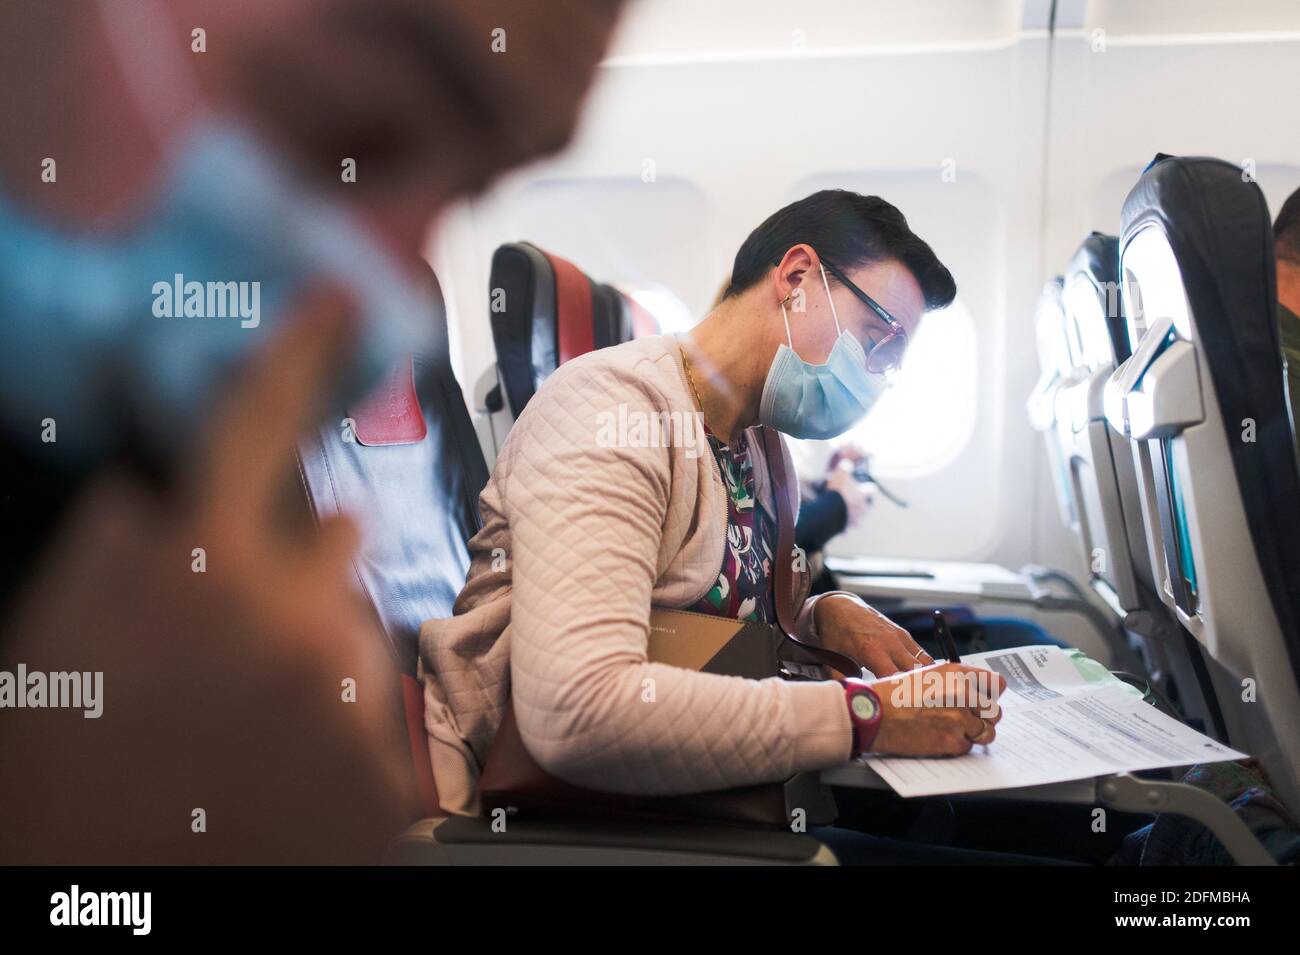 Une femme remplit une carte de localisation de passager, un orme que vous devez remplir quand vous voyagez au Portugal depuis la pandemia Covid-19, en avion à l'aéroport de Bruxelles, en Belgique, le 29 octobre 2020. Photo de Julie Sebadelha/ABACAPRESS.COM Banque D'Images